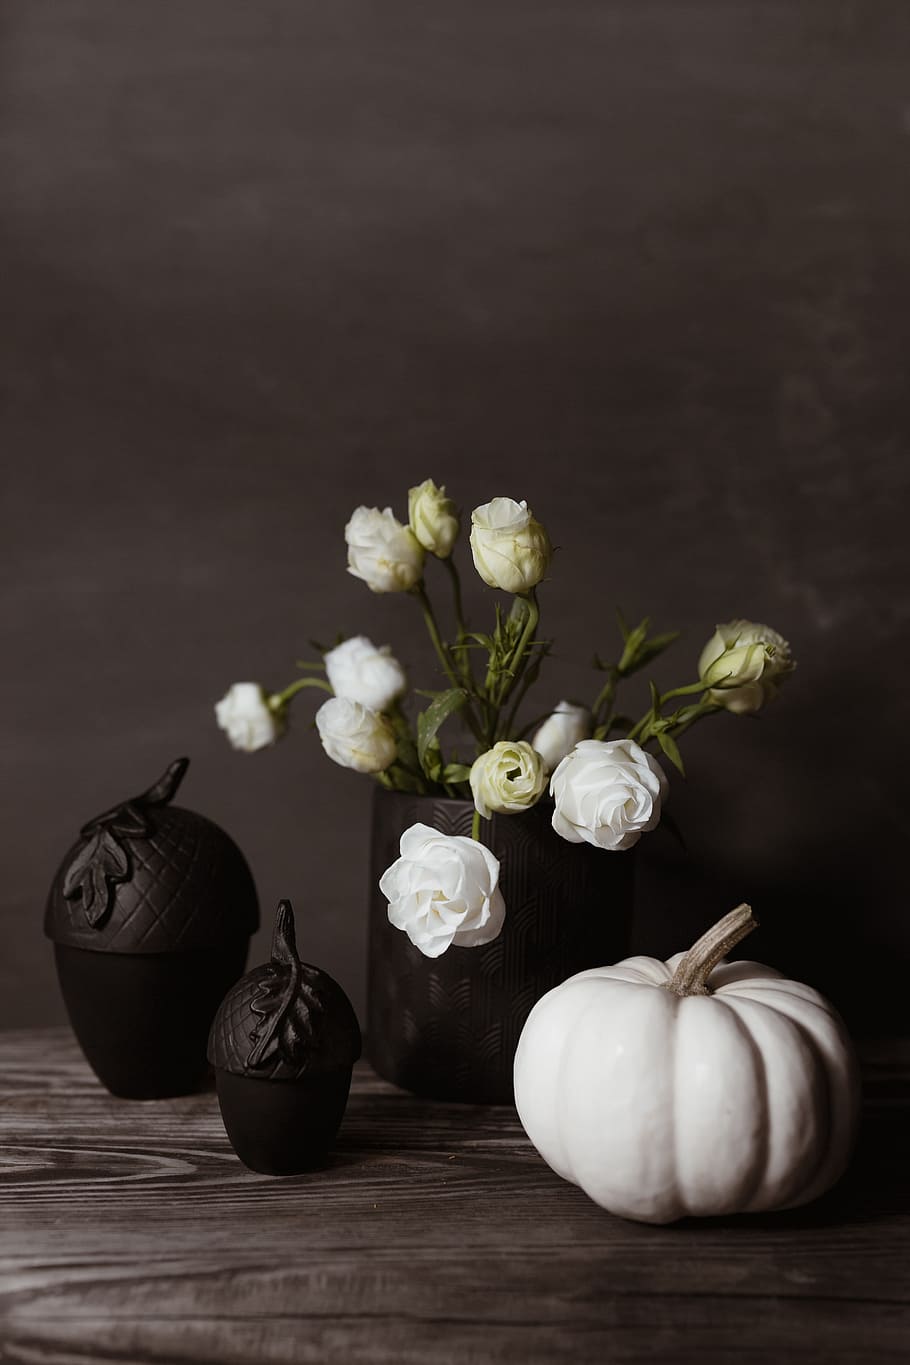 oscuro, decoraciones para el hogar de humor, flores, decoraciones, decoración para el hogar, calabaza, halloween, calabaza blanca, frescura, mesa